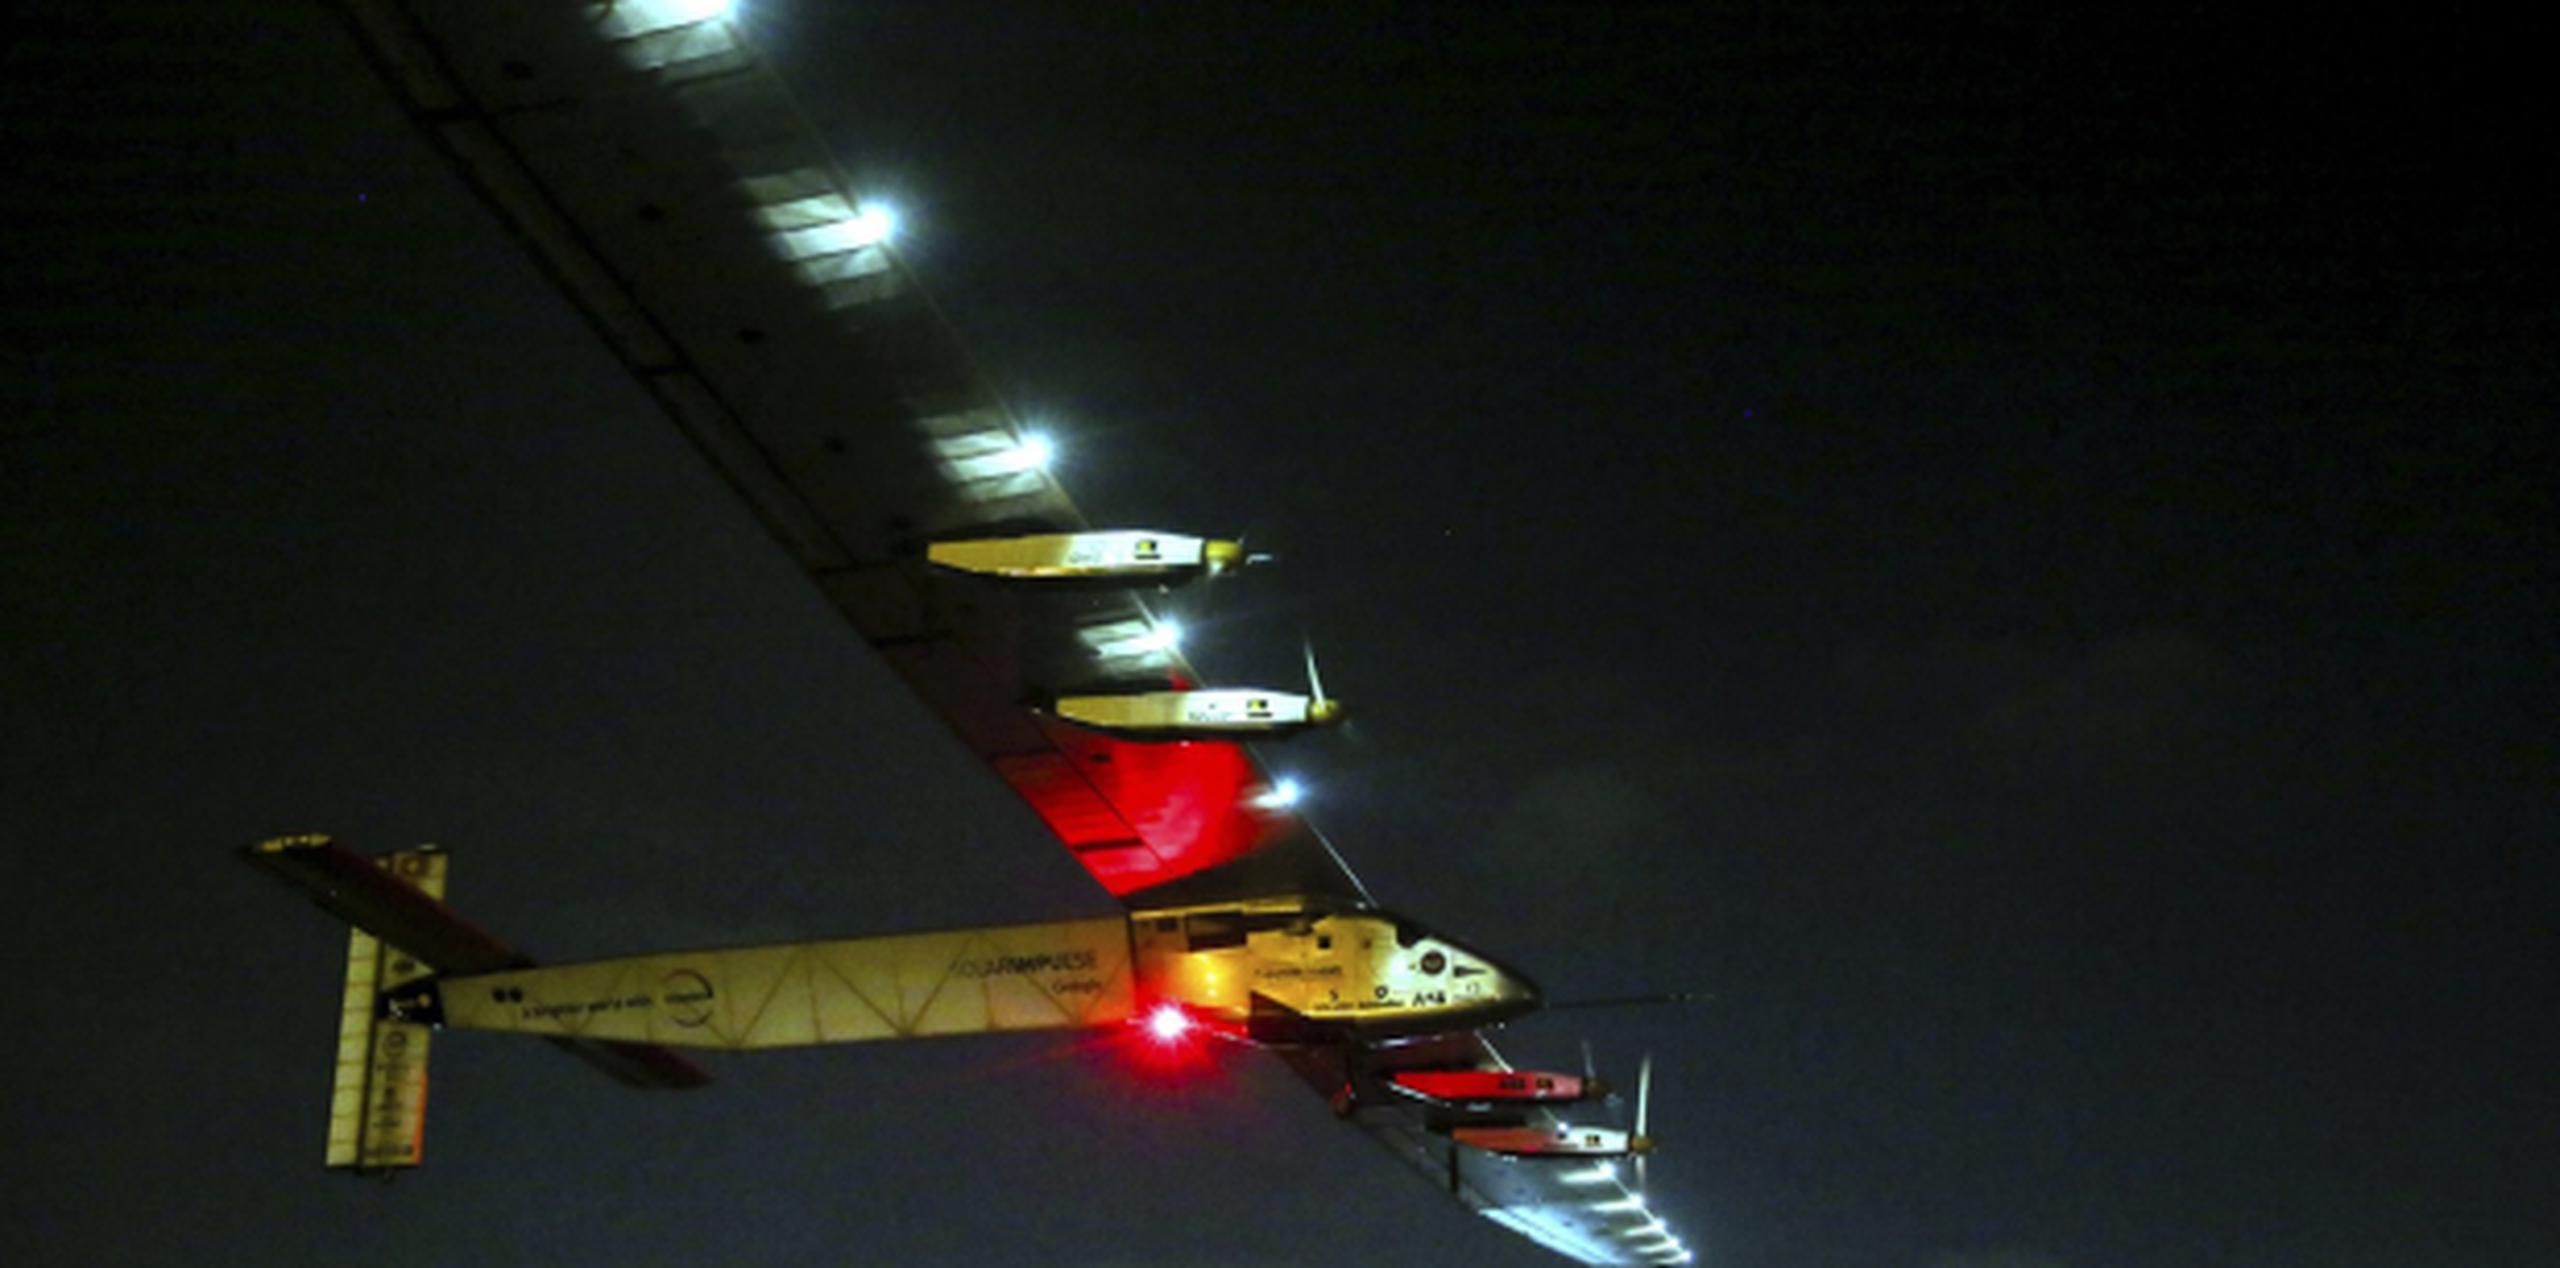 La aeronave experimental Solar Impulse 2 despega del aeropuerto internacional de El Cairo rumbo a Abu Dabi. (EFE/EPA/MOSTAFA ALSHEMY)
